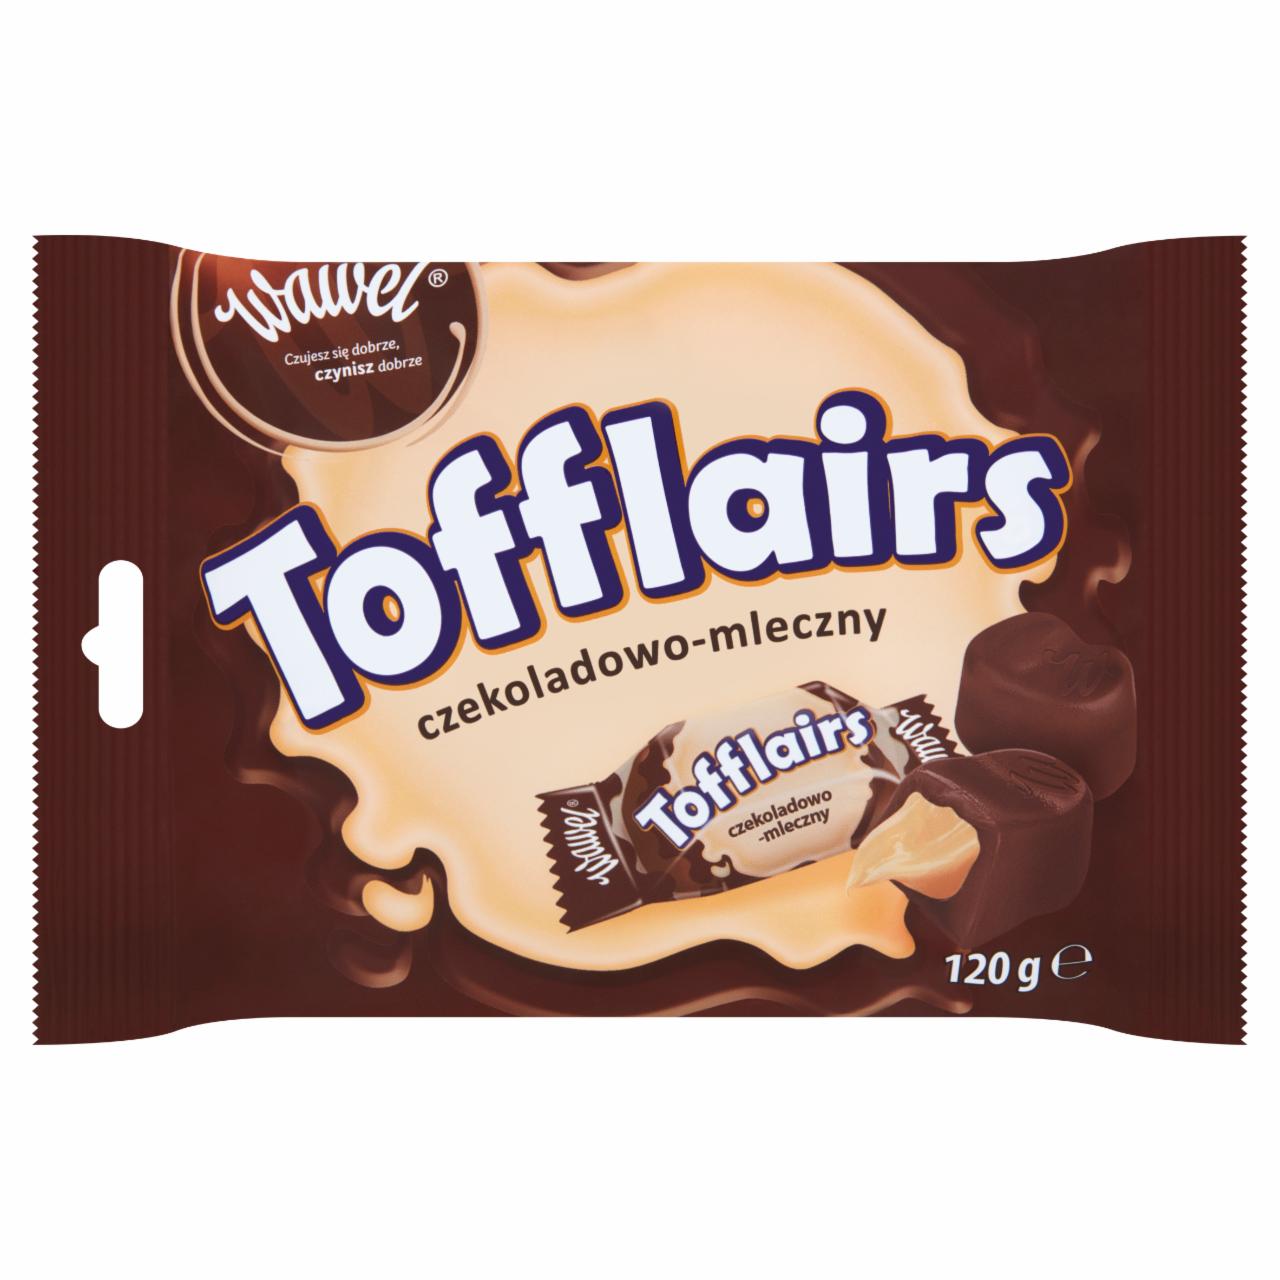 Zdjęcia - Wawel Tofflairs czekoladowo-mleczny Pomadki niekrystaliczne czekoladowe 120 g